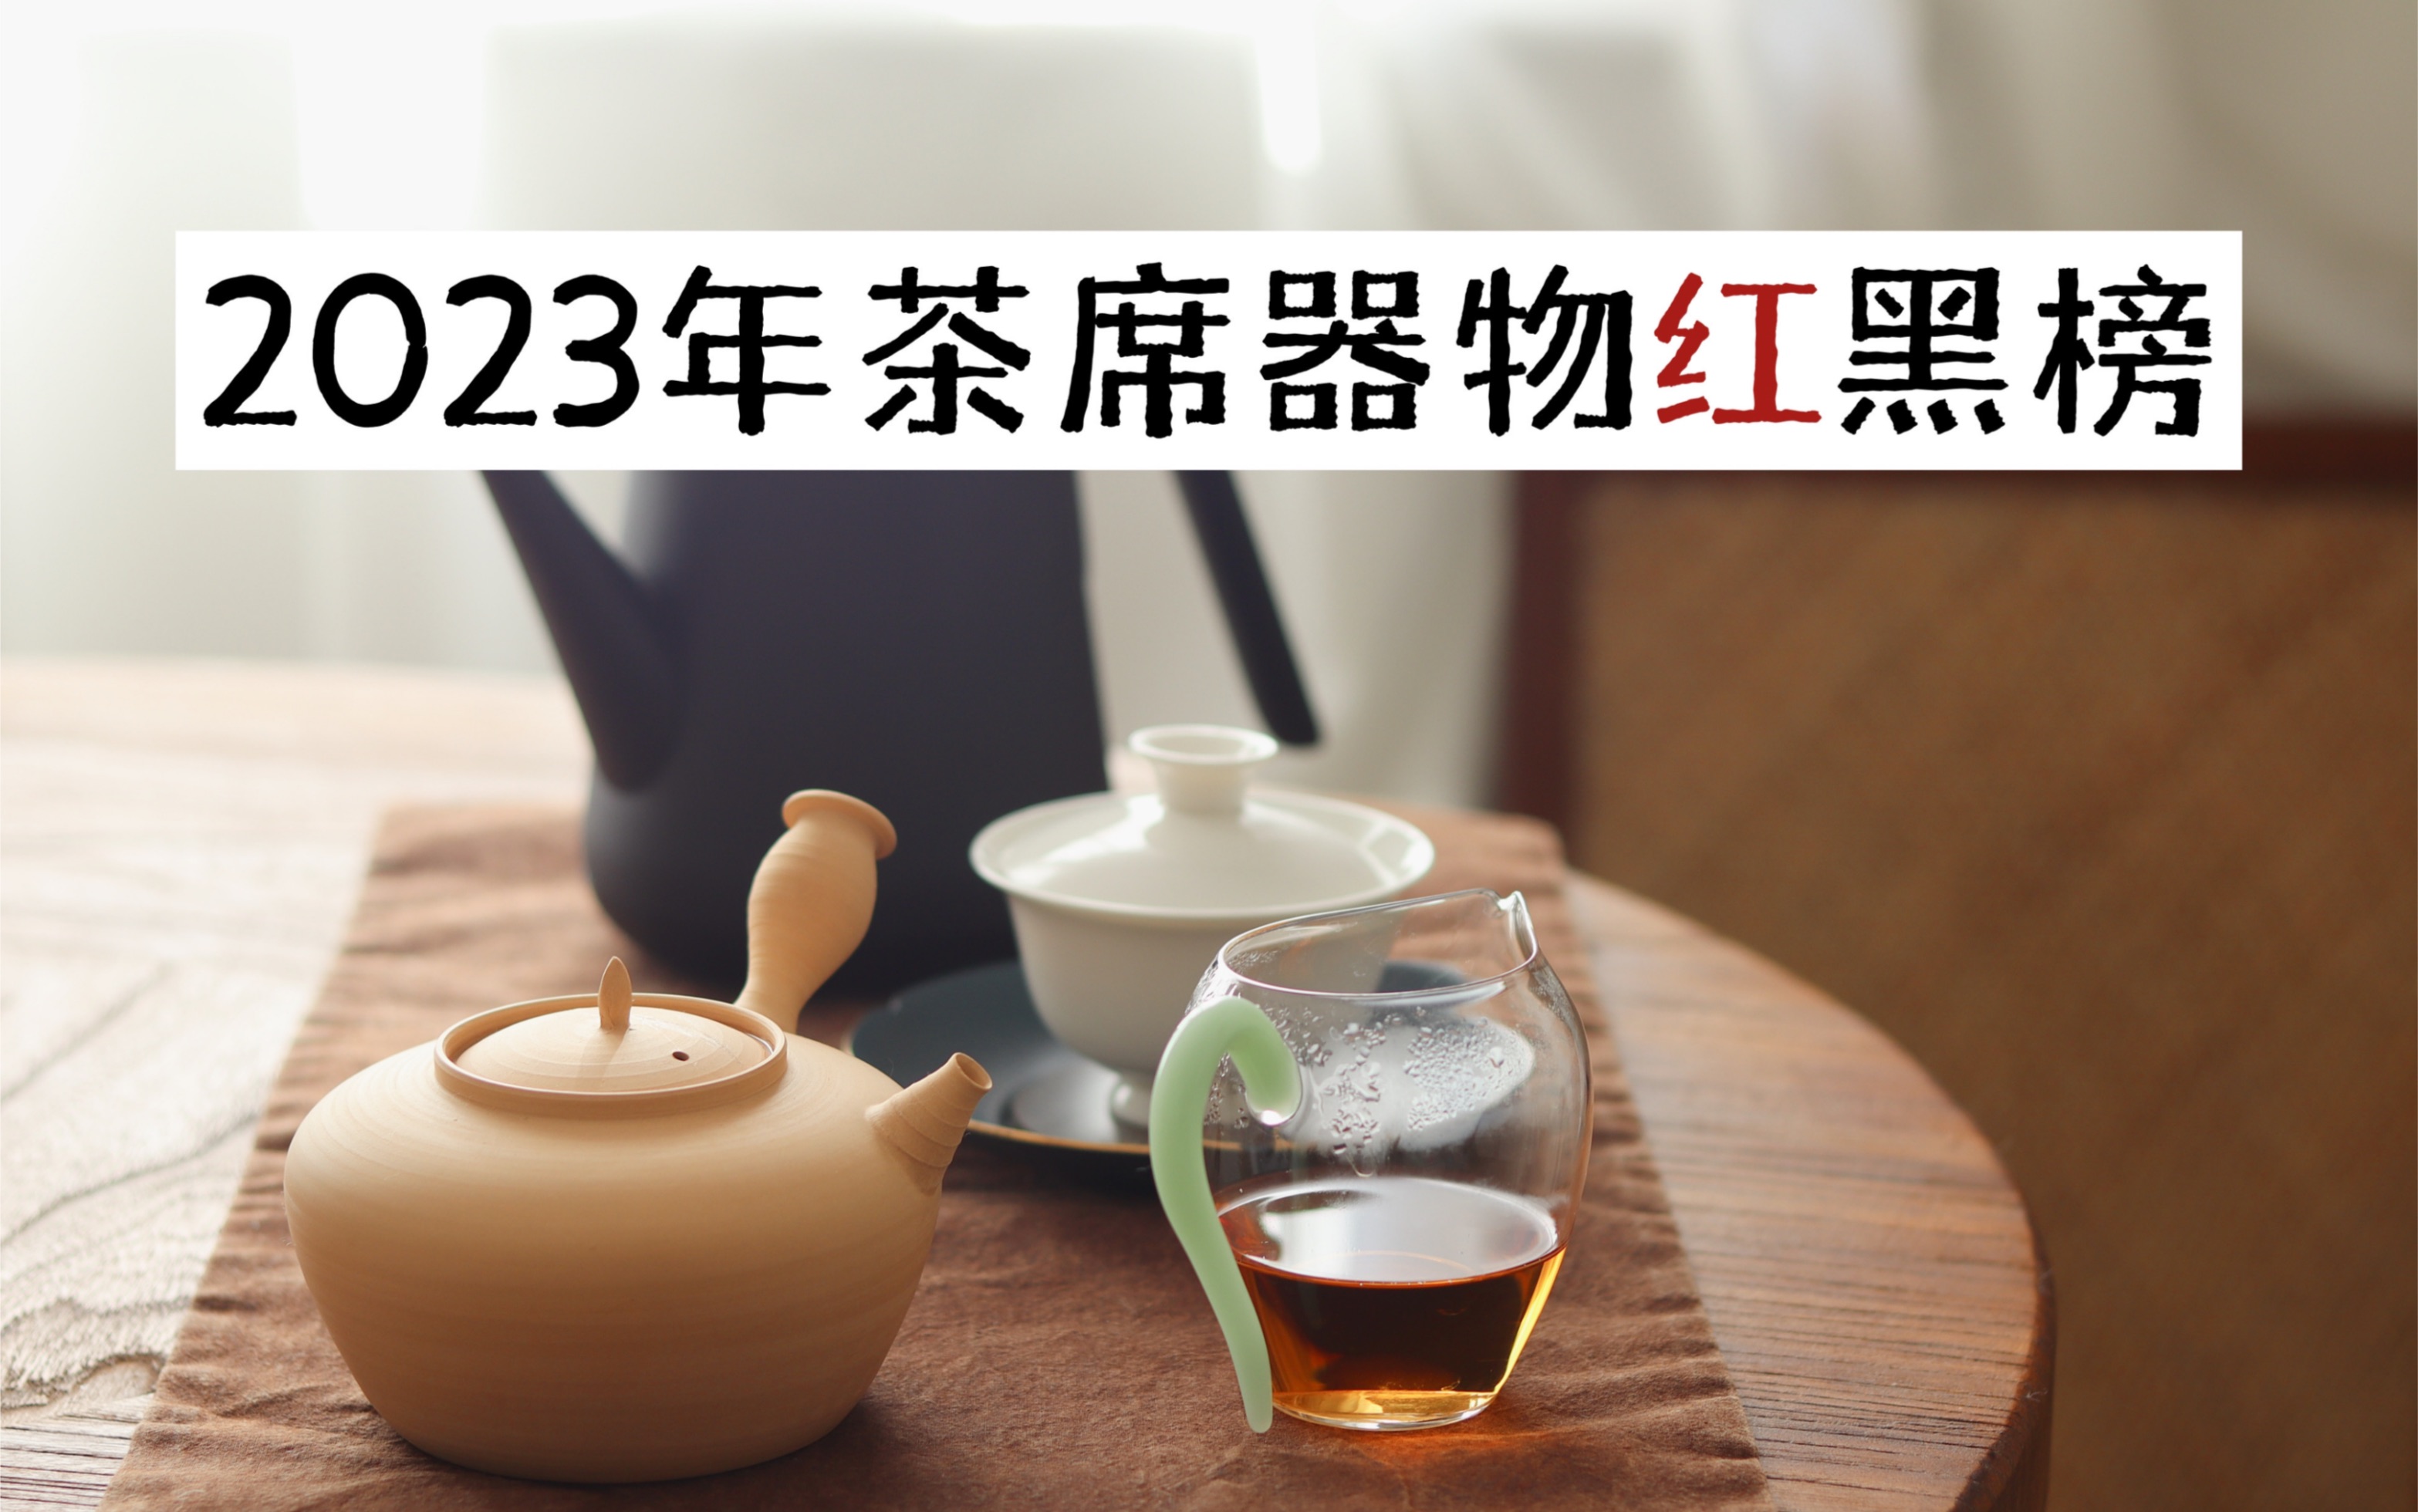 【清山茶事】一个茶艺师的年度爱用茶器和雷品吐槽